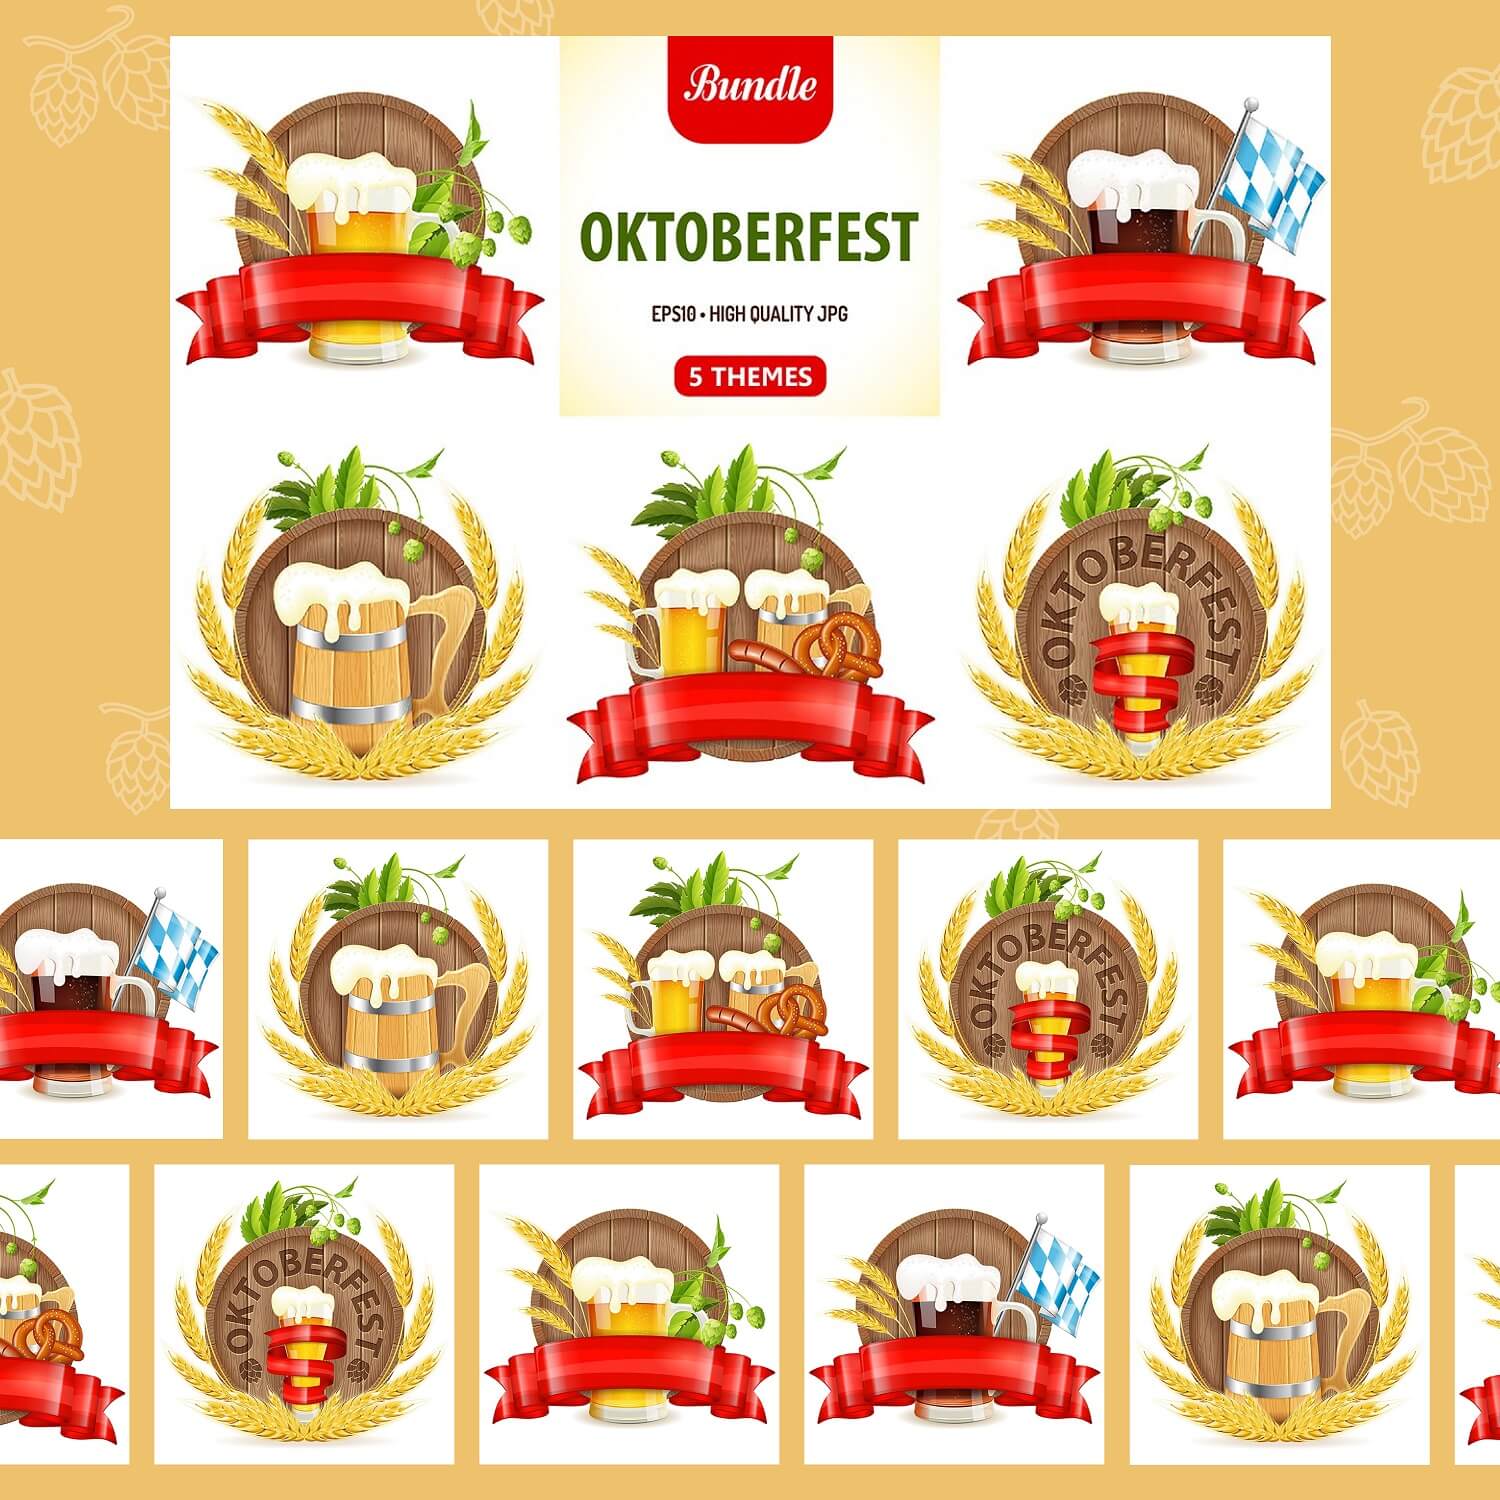 5 Themes of Oktoberfest.